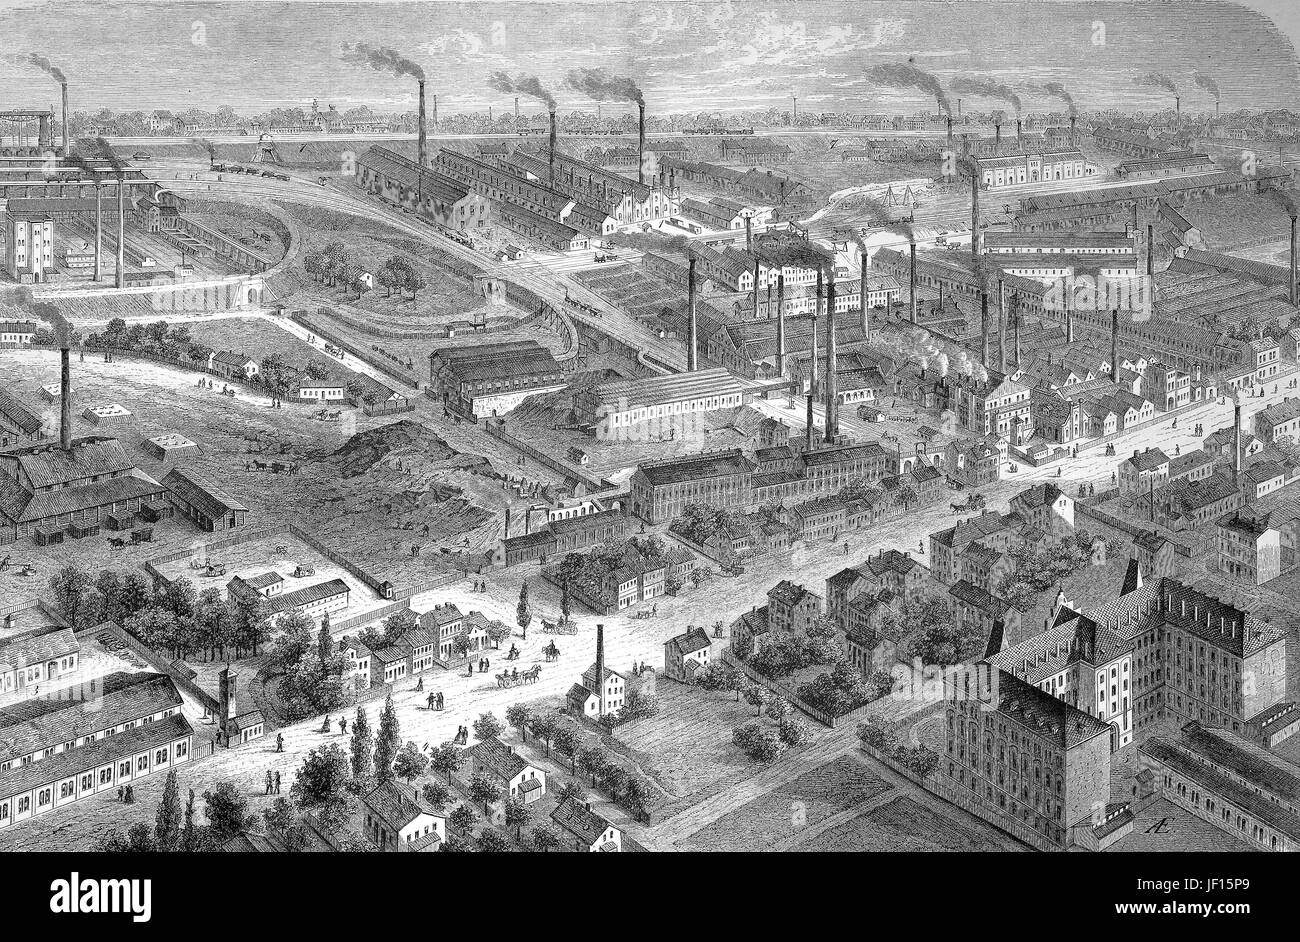 Historische Abbildung des Bochumer Vereins, eine Fabrik zur Herstellung von Tiegelstahl, Deutschland, verbesserte digitale Reproduktion aus einer Originalgraphik von 1888 Stockfoto